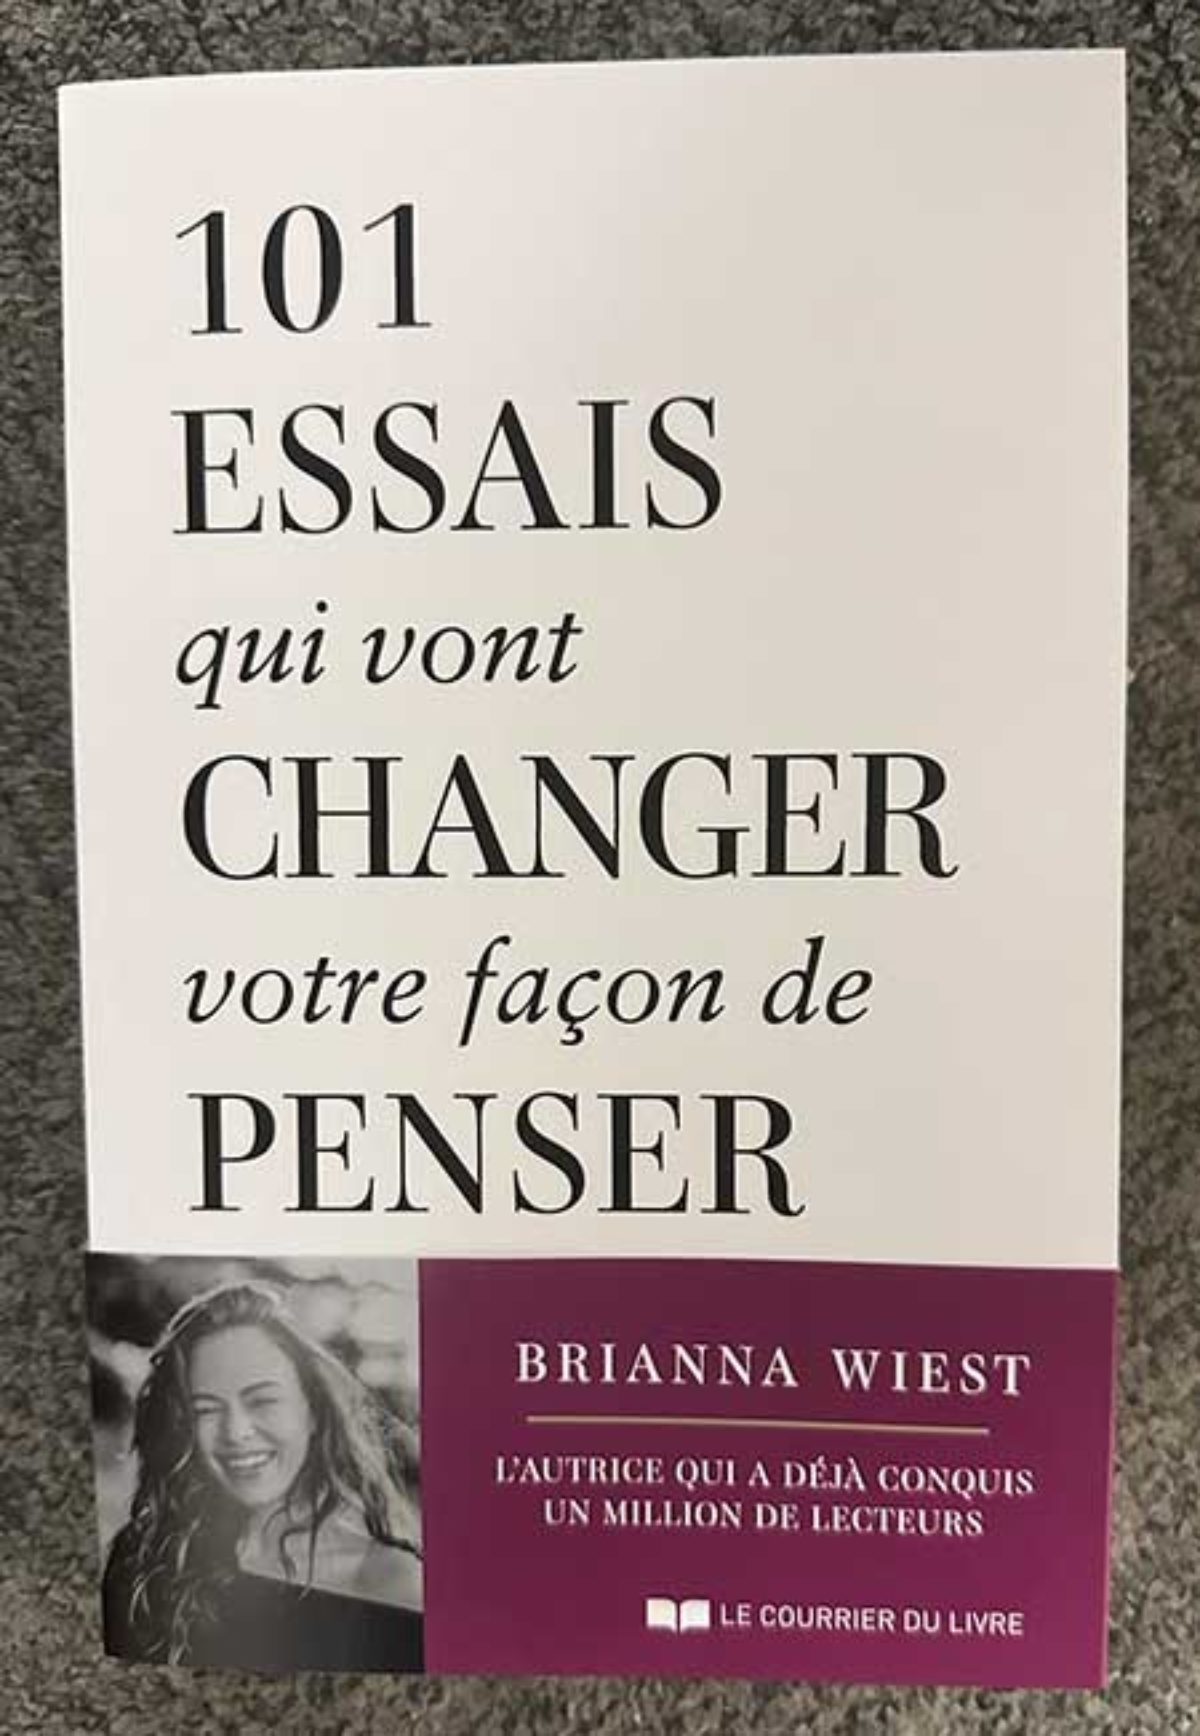 101 essais qui vont changer votre façon de penser de Brianna Wiest chez Le  Courrier du Livre - Notre-Siècle